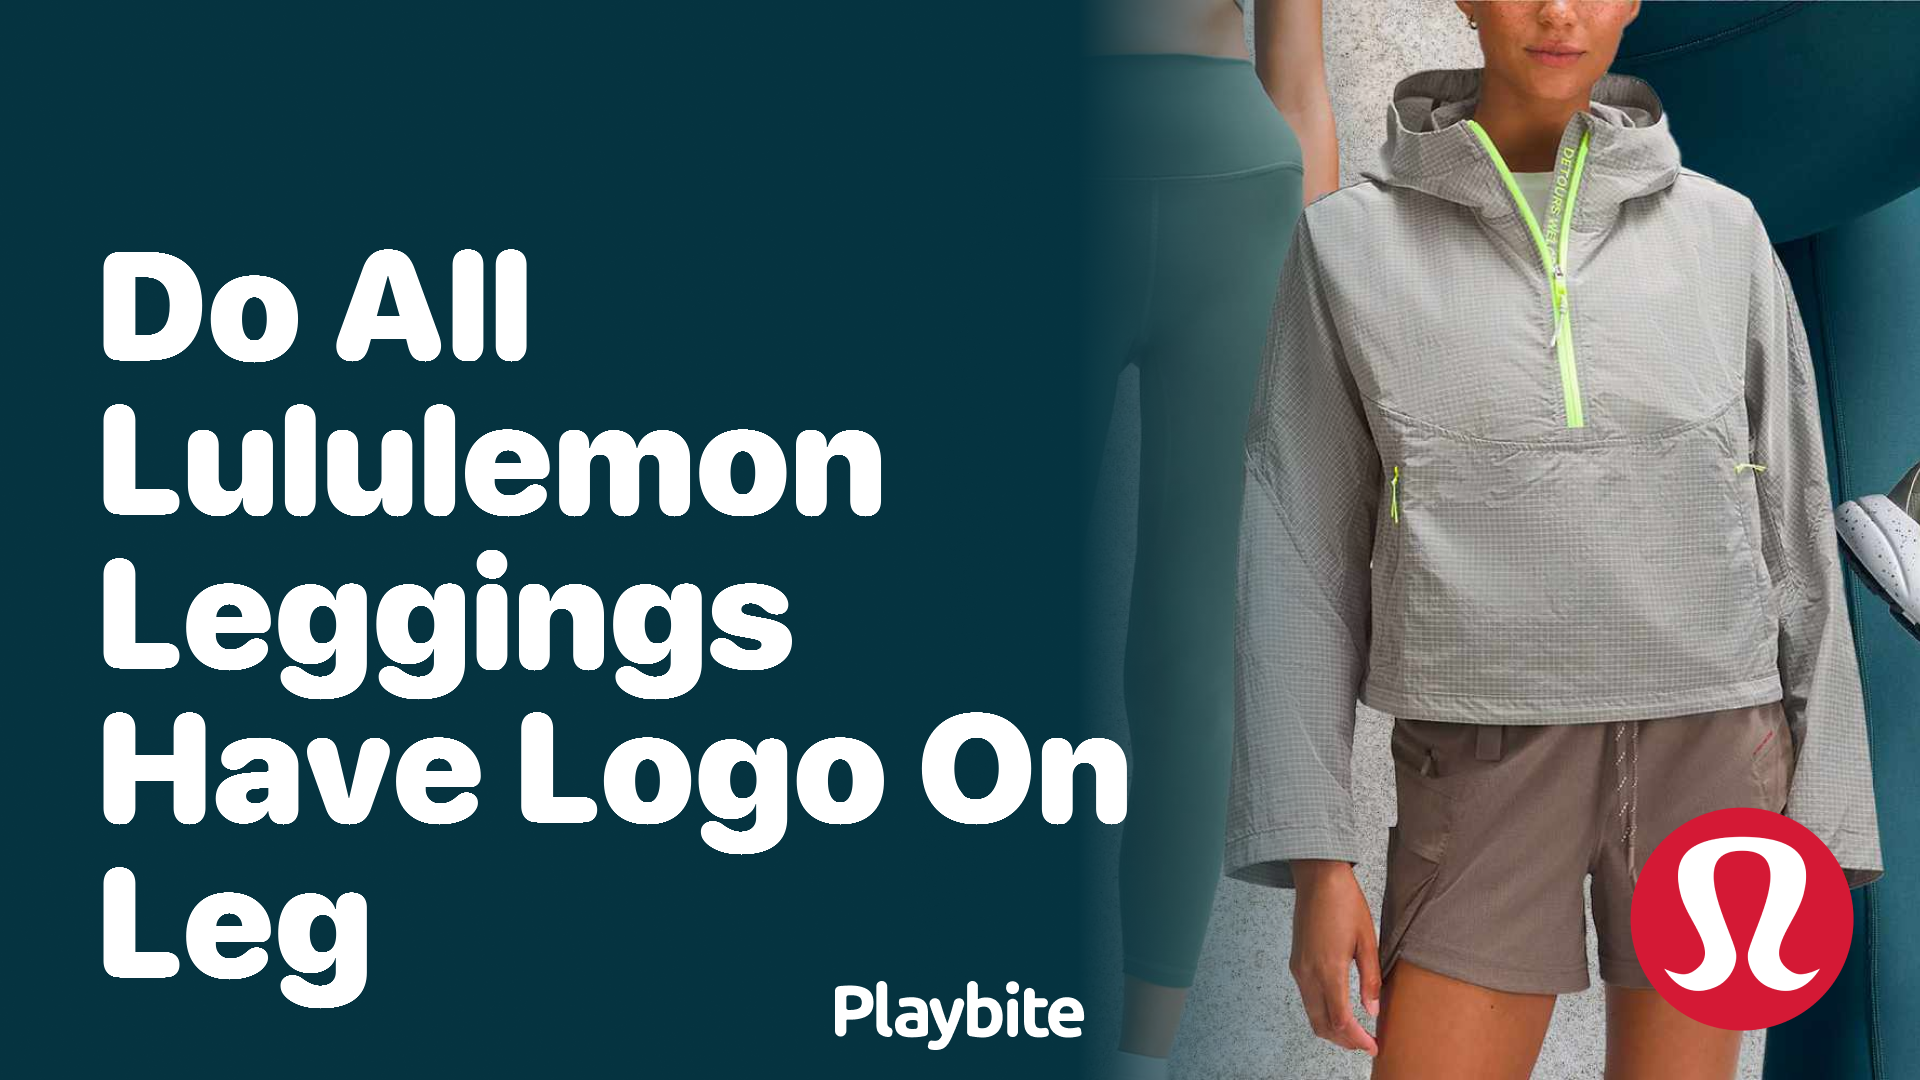 Do All Lululemon Leggings Have the Logo on the Leg? - Playbite